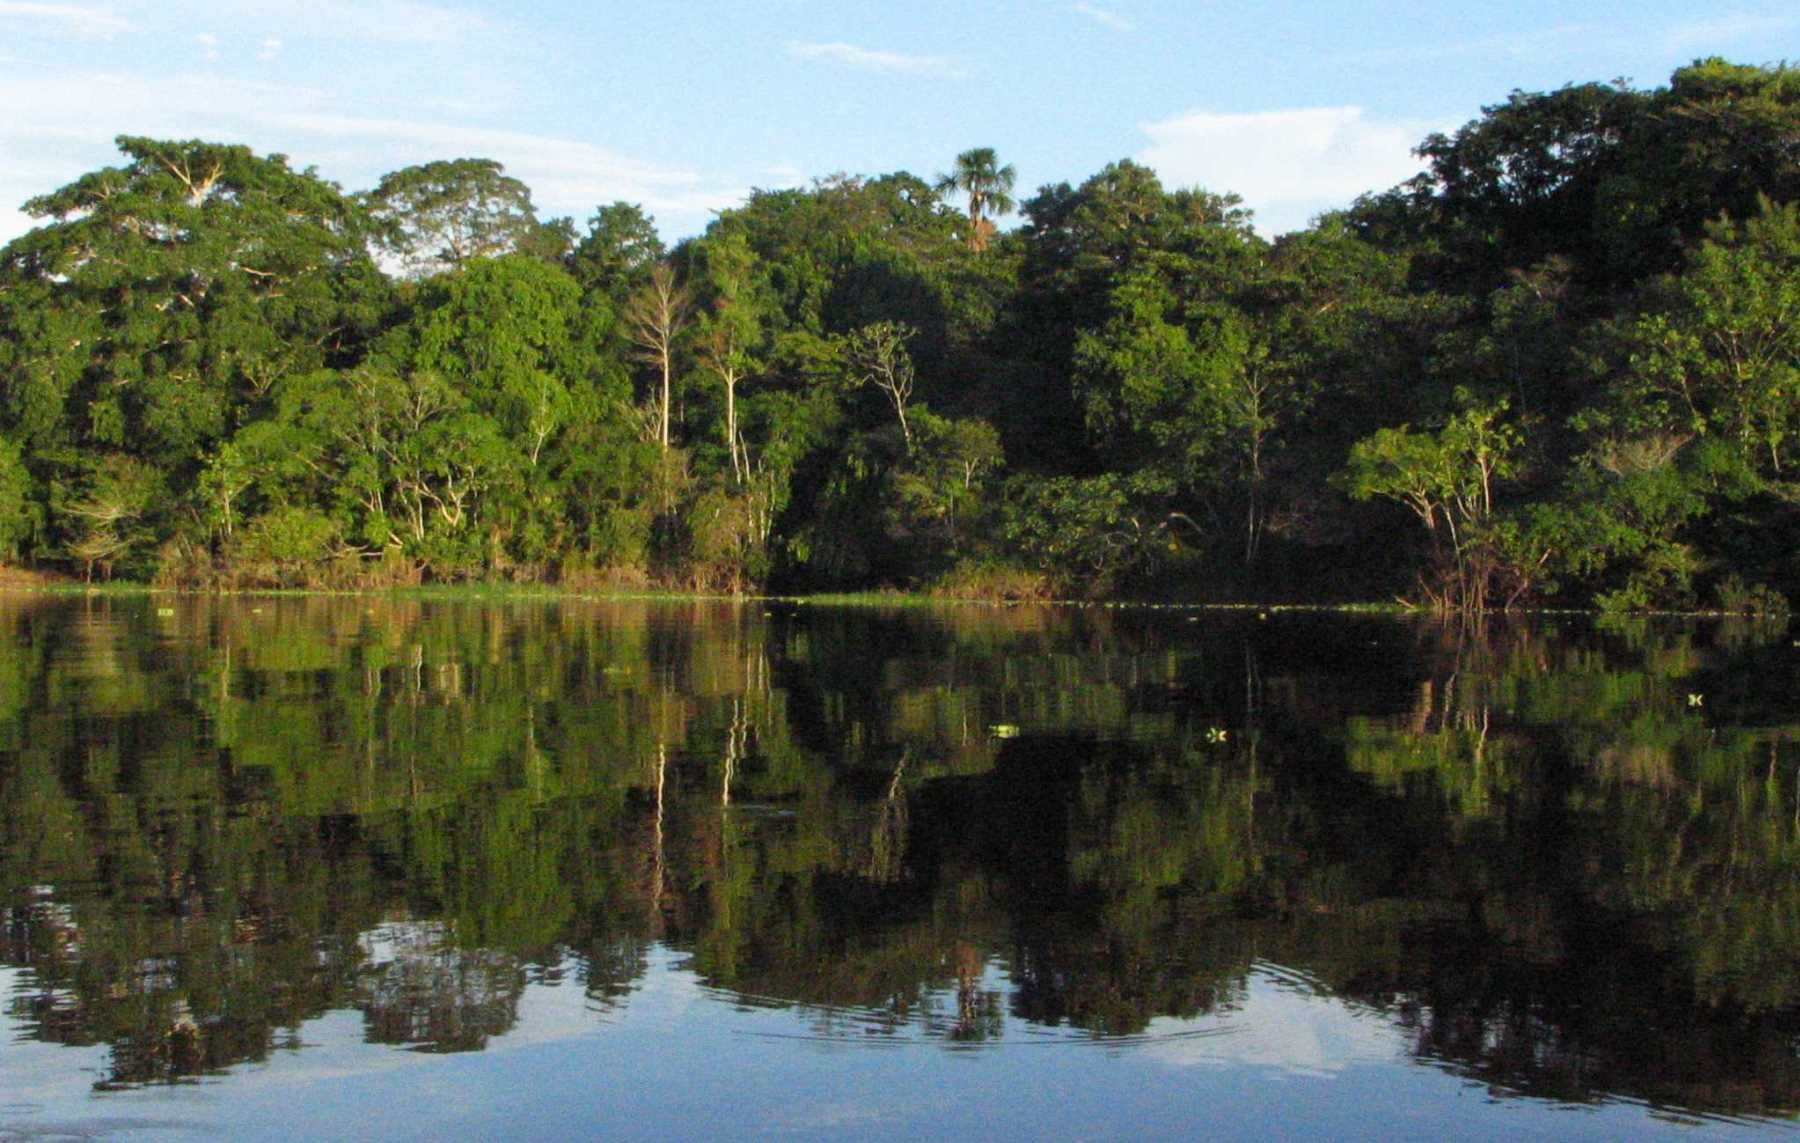 El bosque amazónico alberga una gran diversidad biológica y es una de las reservas mundiales. ANDINA/archivo